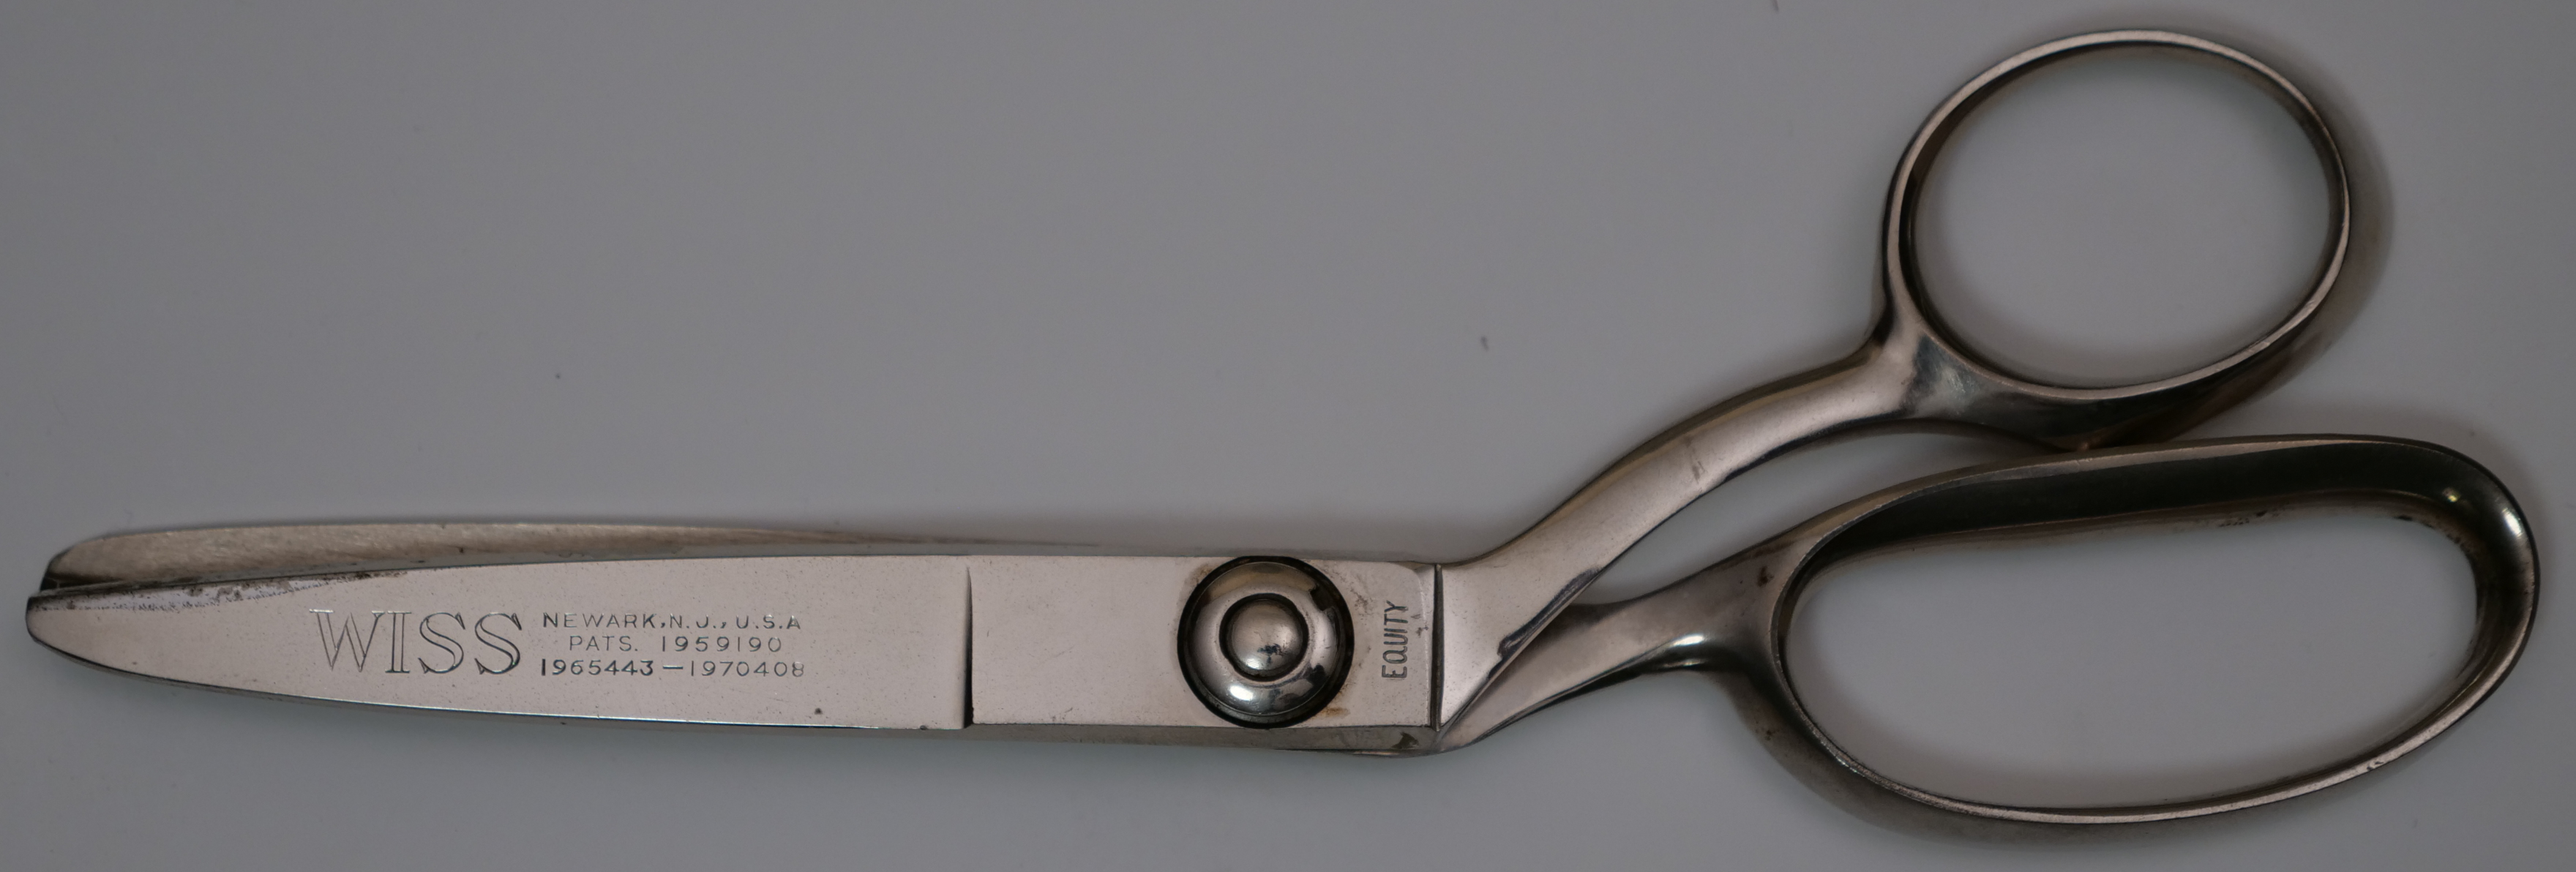 EQUITY Shear Co. Newark, NJ Vintage Metal Scissors Shears 7 USA Made